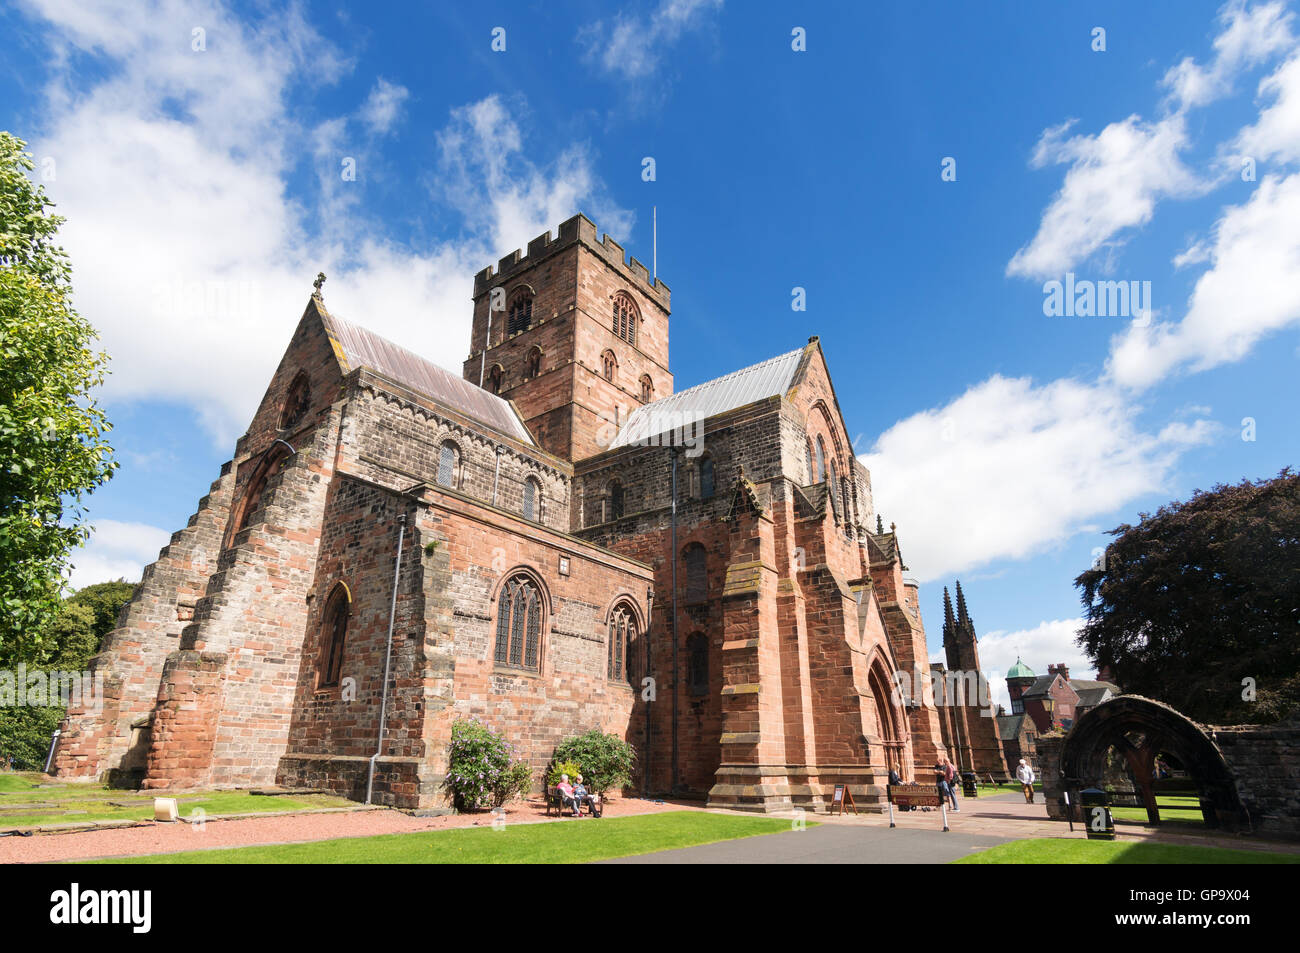 Vue depuis le sud-ouest de la cathédrale de Carlisle, Cumbria, England, UK Banque D'Images